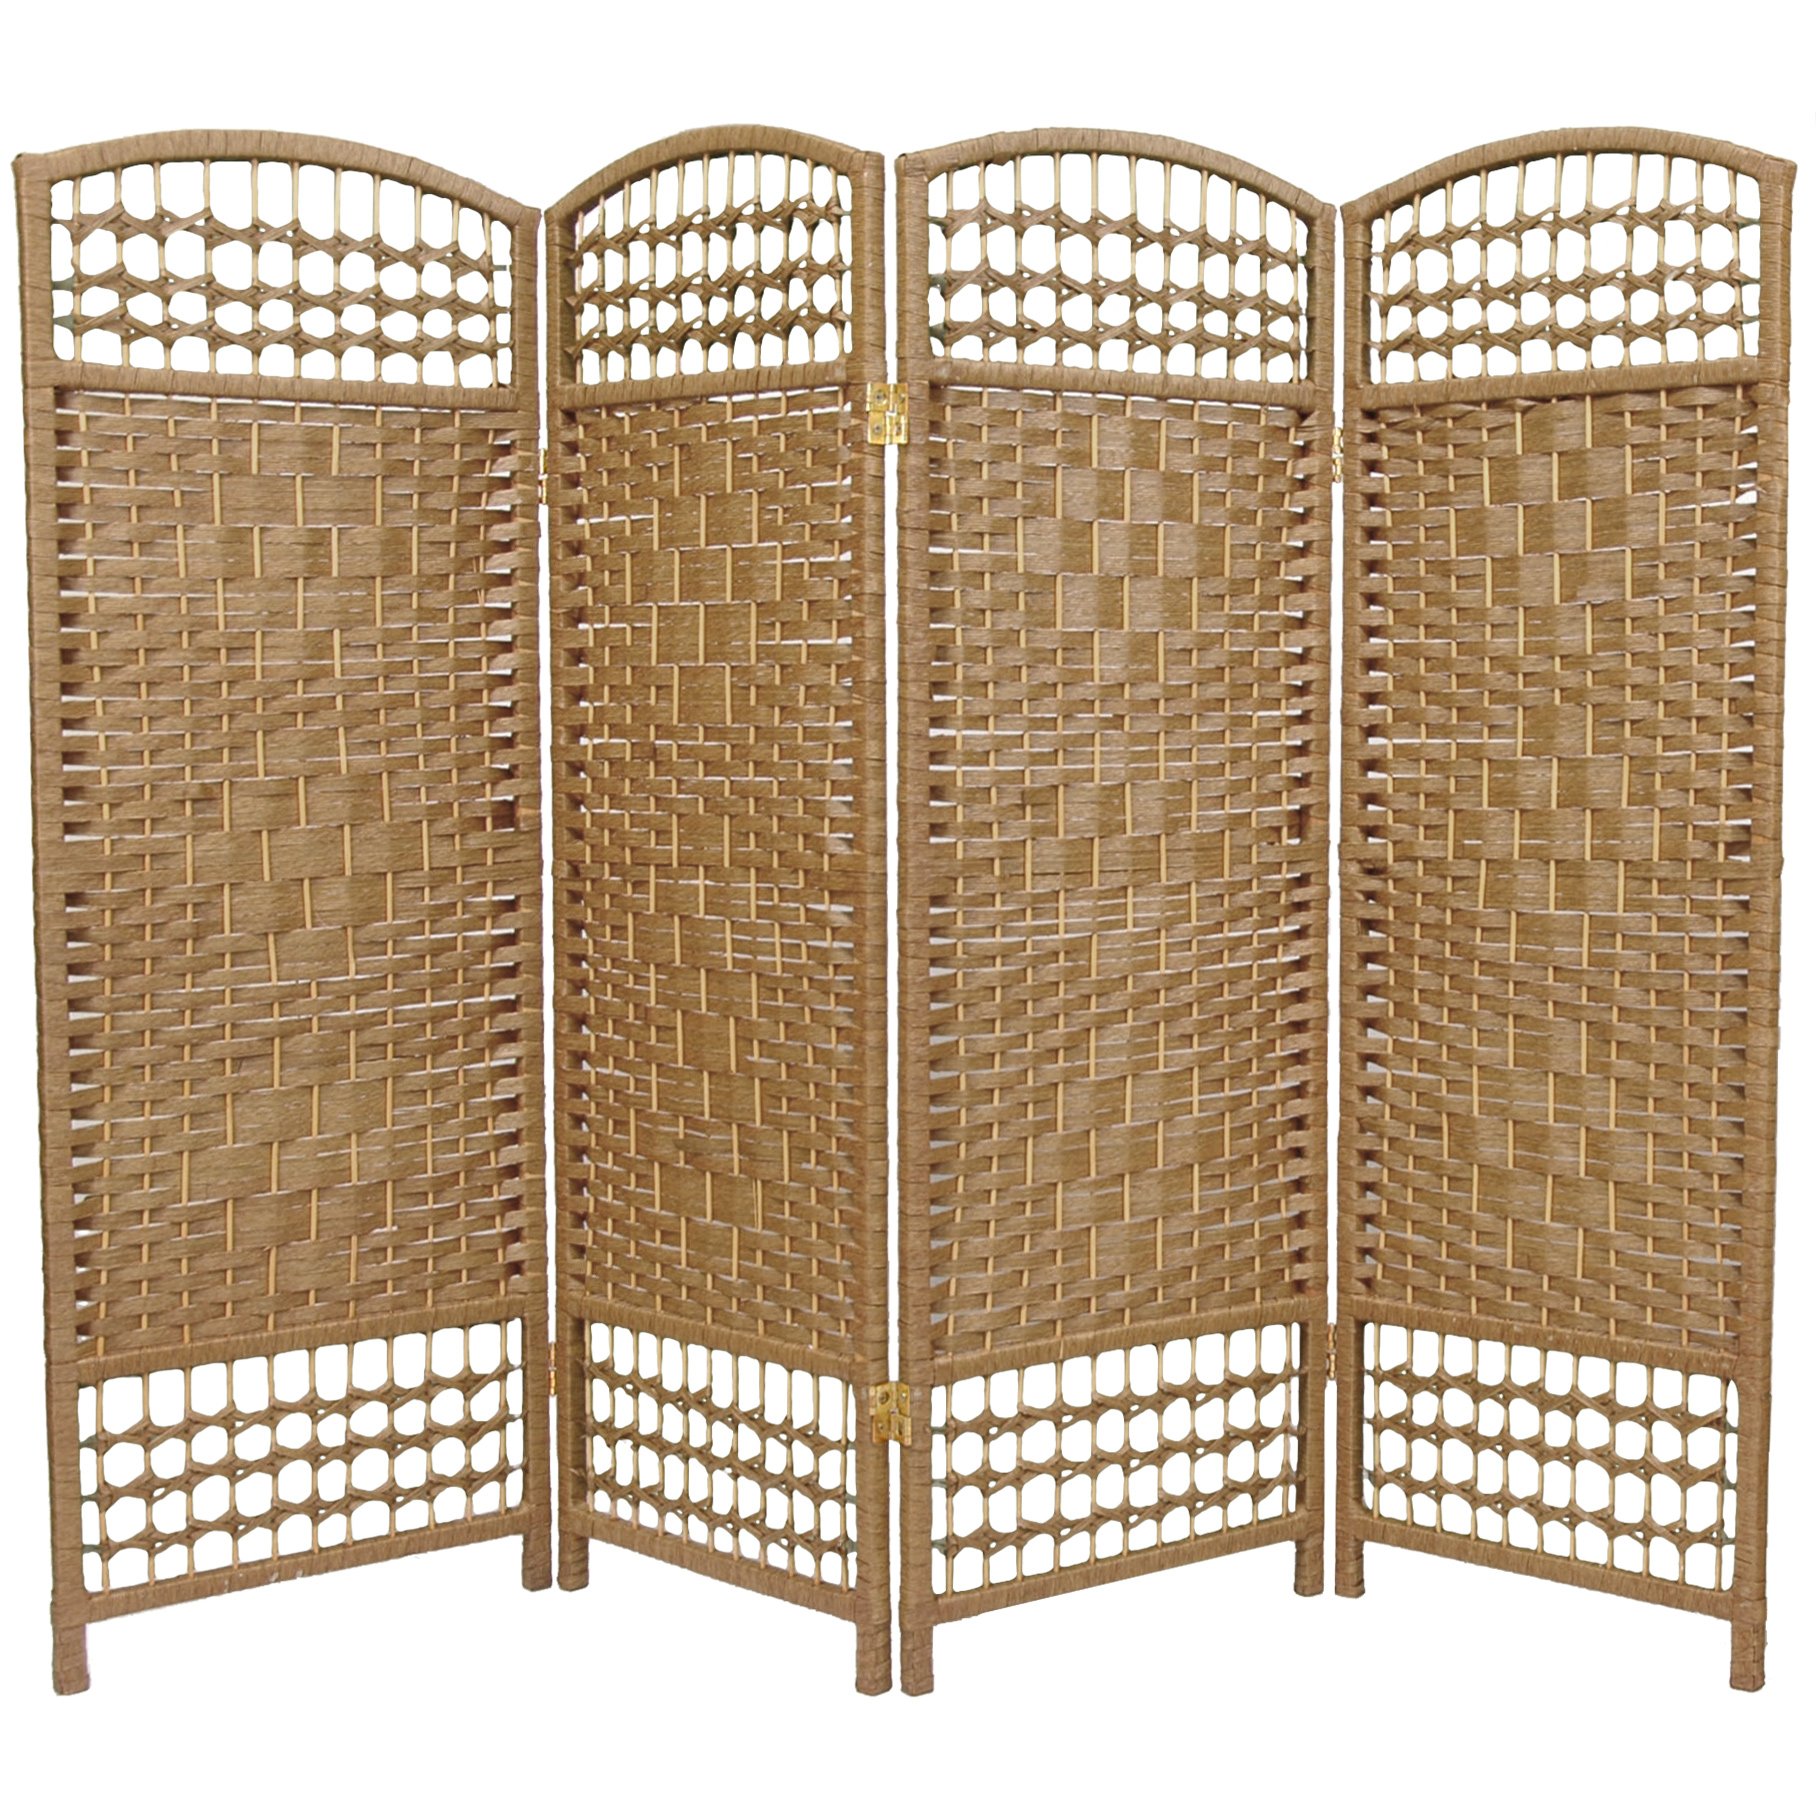 Oriental Furniture 4 ft. Tall Fiber Weave Room Divider - 4 Panel - Natural